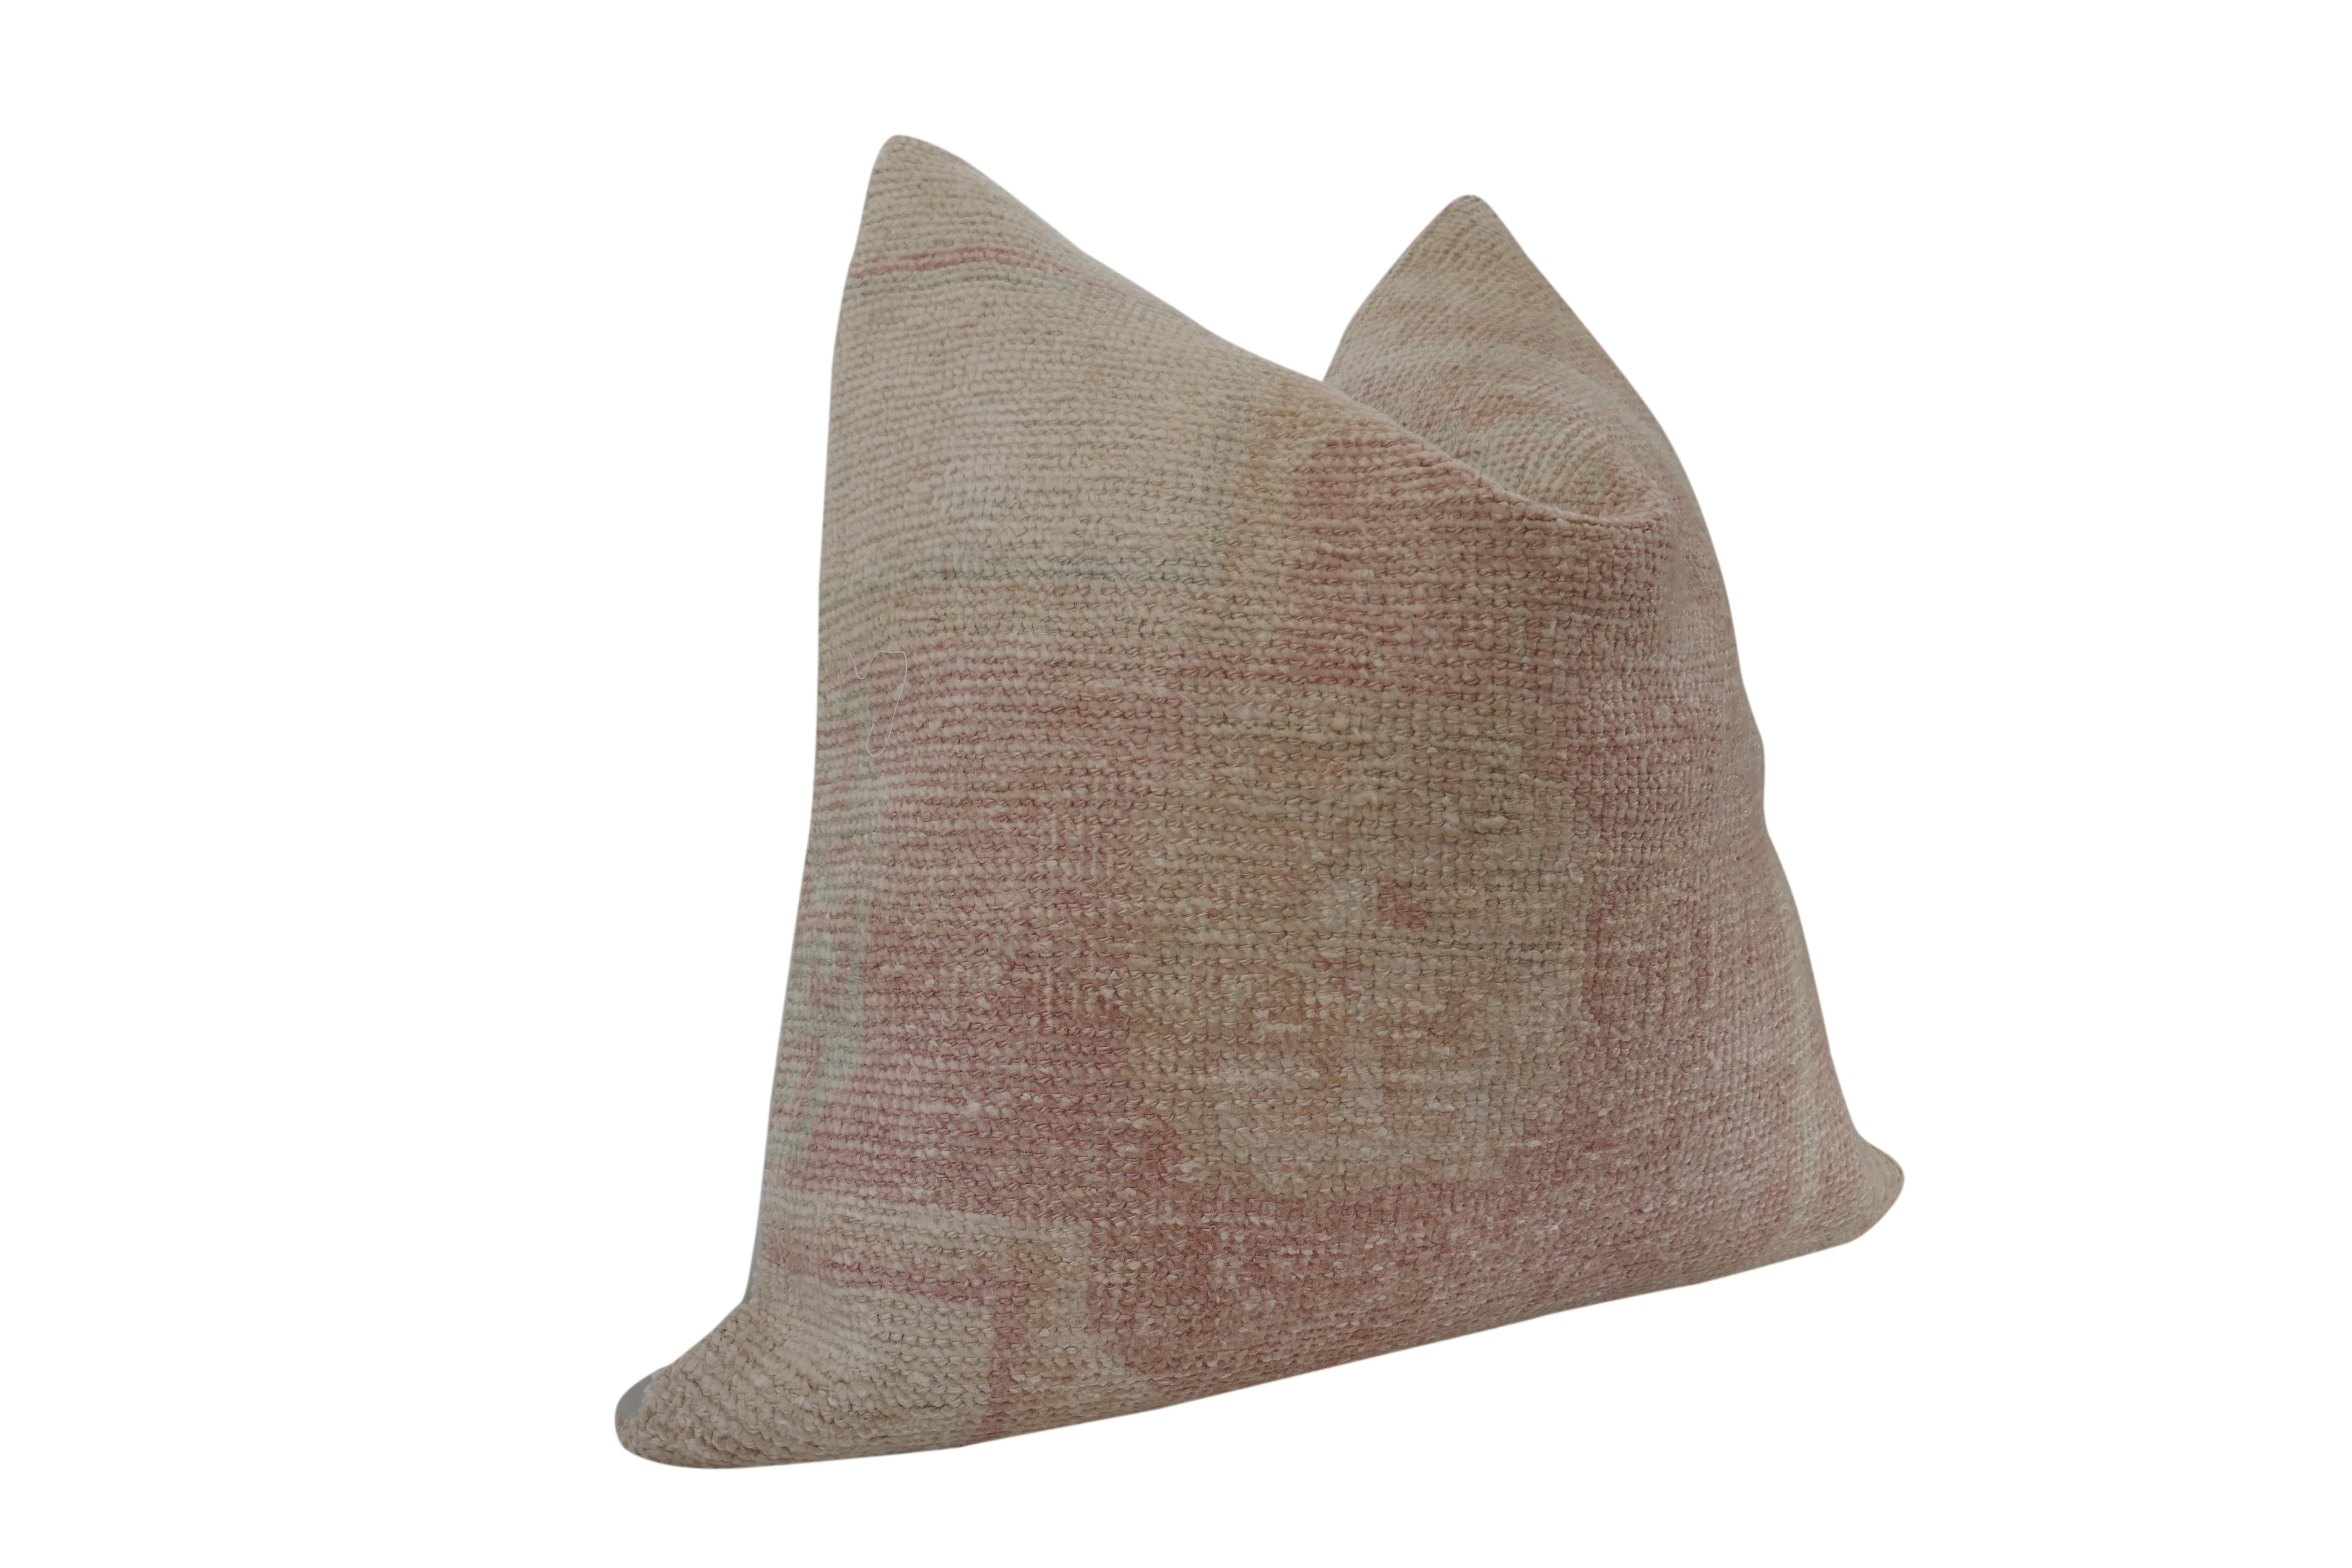 Unsere Herbst Collection'S mit ausgewählten authentischen Vintage-Textilien. Makellos aus Berber-Kilim-Wolle gefertigt, mit einzigartigen, natürlich gealterten, wunderschön gedämpften Blush- und Sandtönen. Gepaart mit unserer hochwertigen neutralen